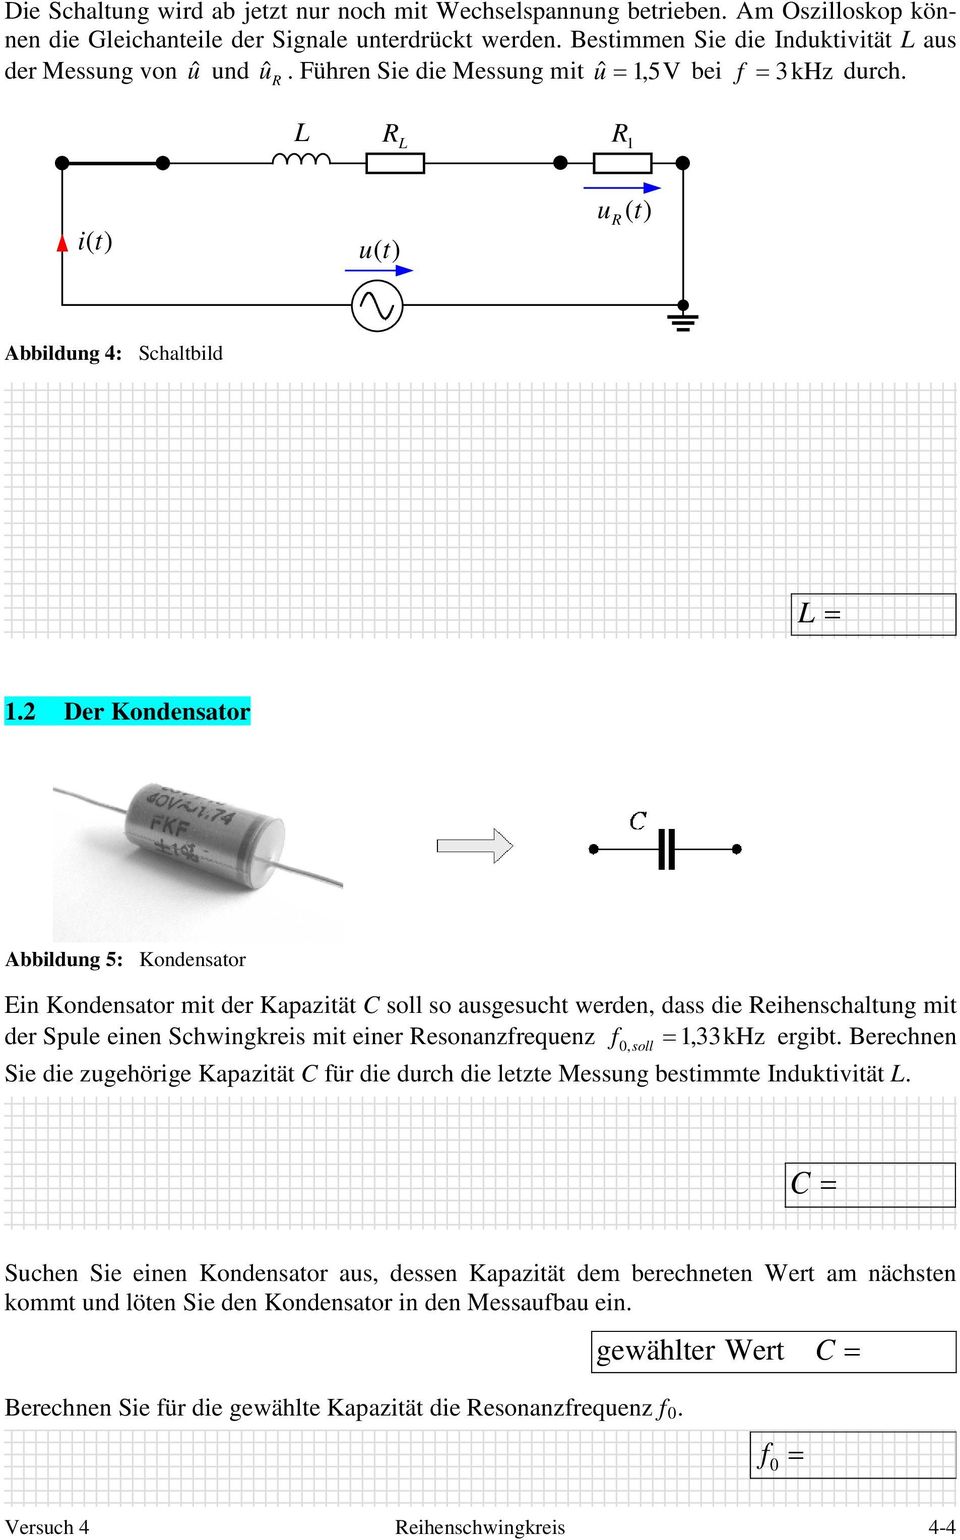 Der Kondensator Abbildung 5: Kondensator Ein Kondensator mit der Kapazität soll so ausgesucht werden, dass die eihenschaltung mit der Spule einen Schwingkreis mit einer esonanzrequenz,33khz ergibt.